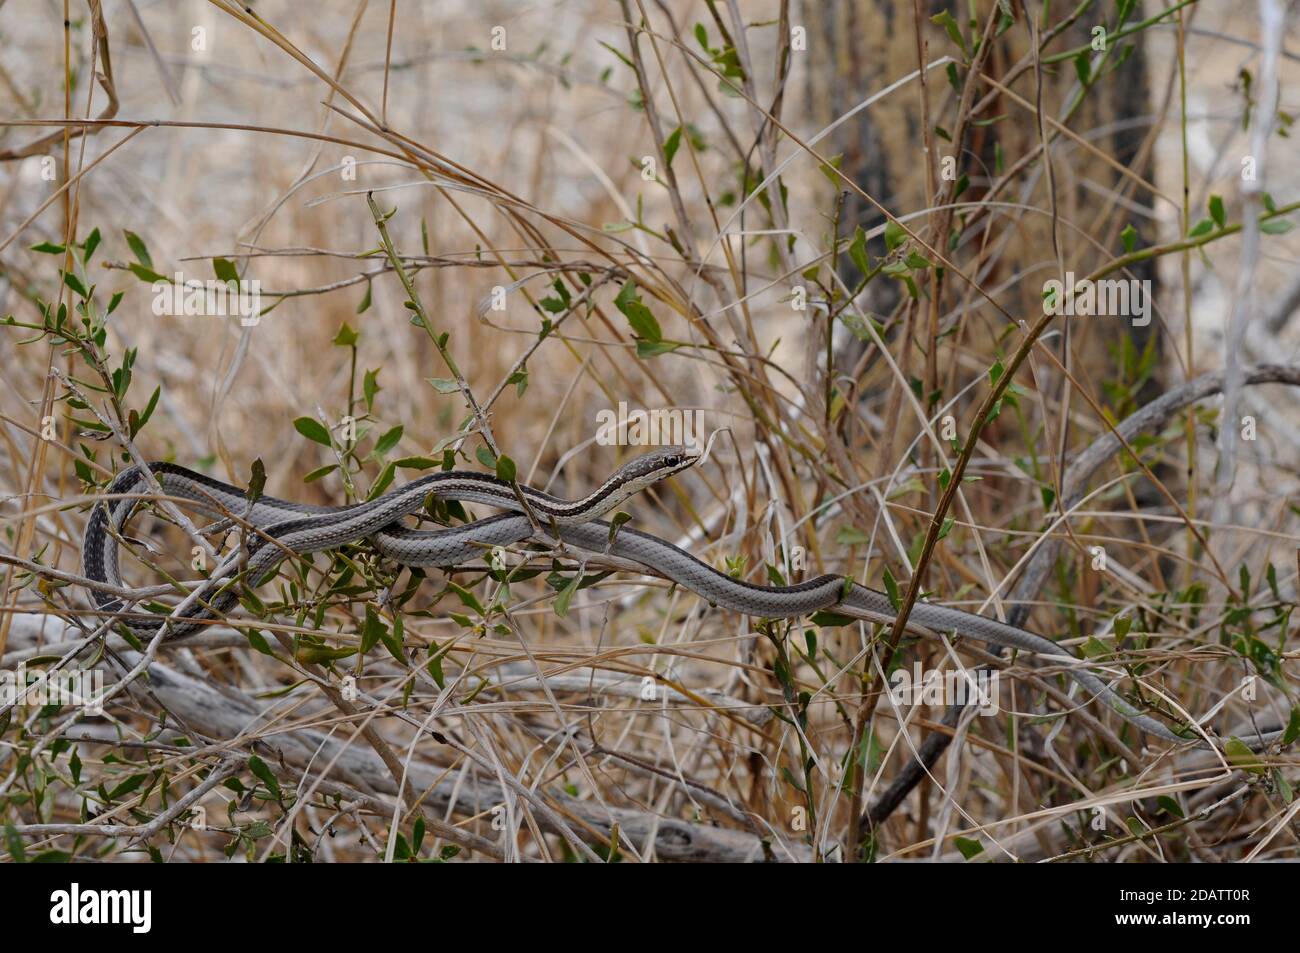 La serpiente de rayas de Bernier se mezcla con las ramas en los arbustos Foto de stock